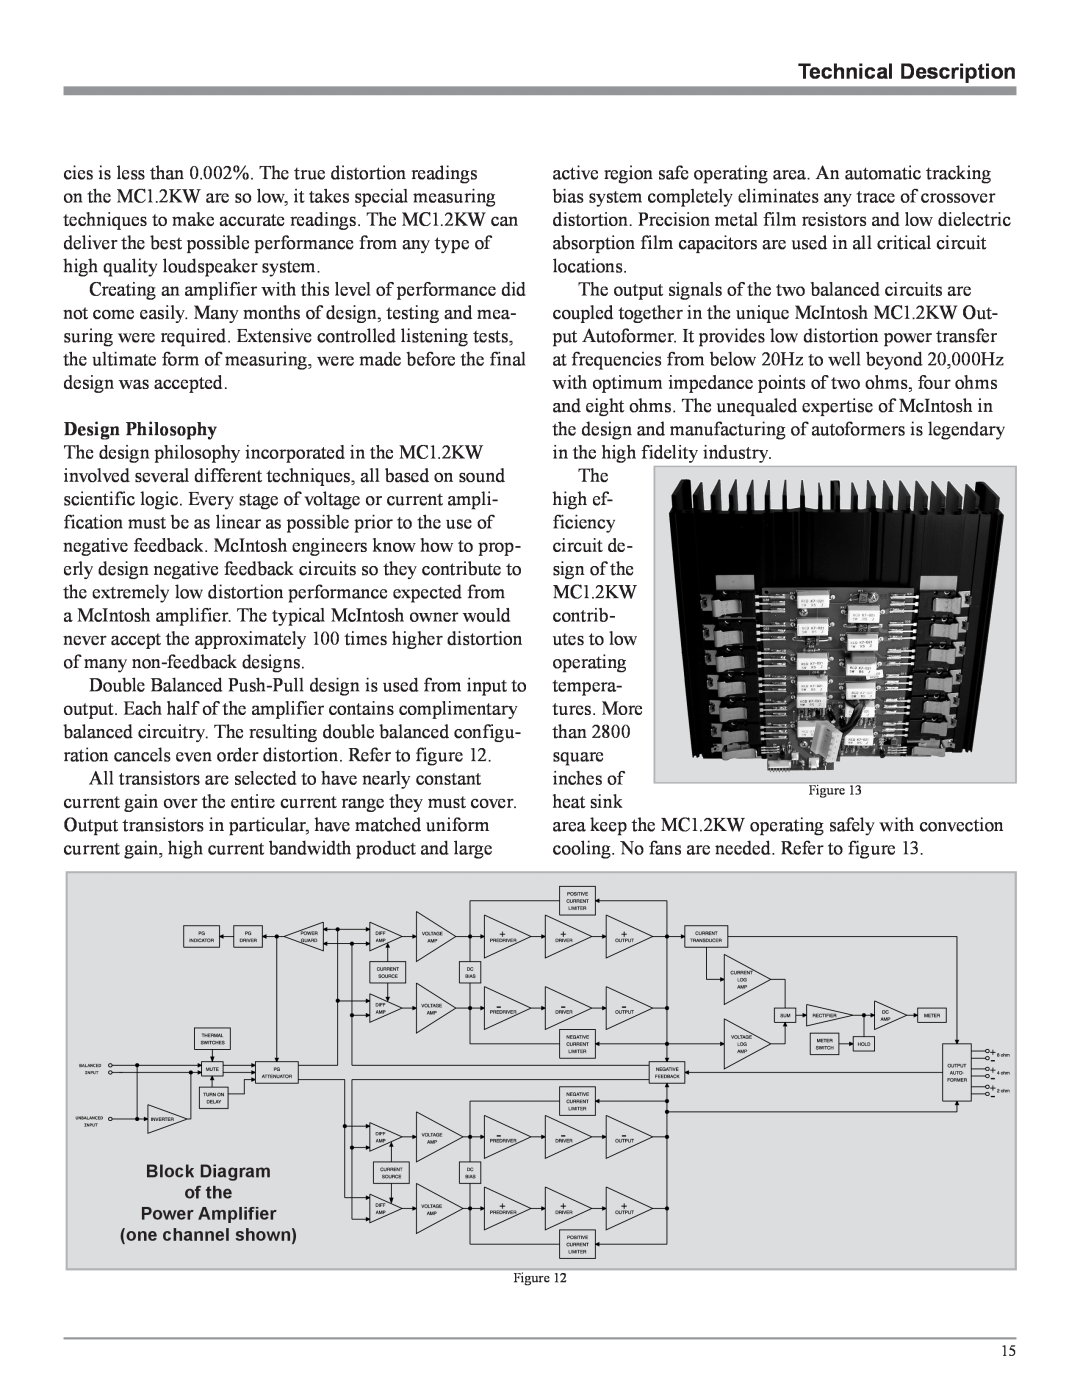 McIntosh MC1.2KW Technical Description, Design Philosophy, Block Diagram of the Power Amplifier, one channel shown 